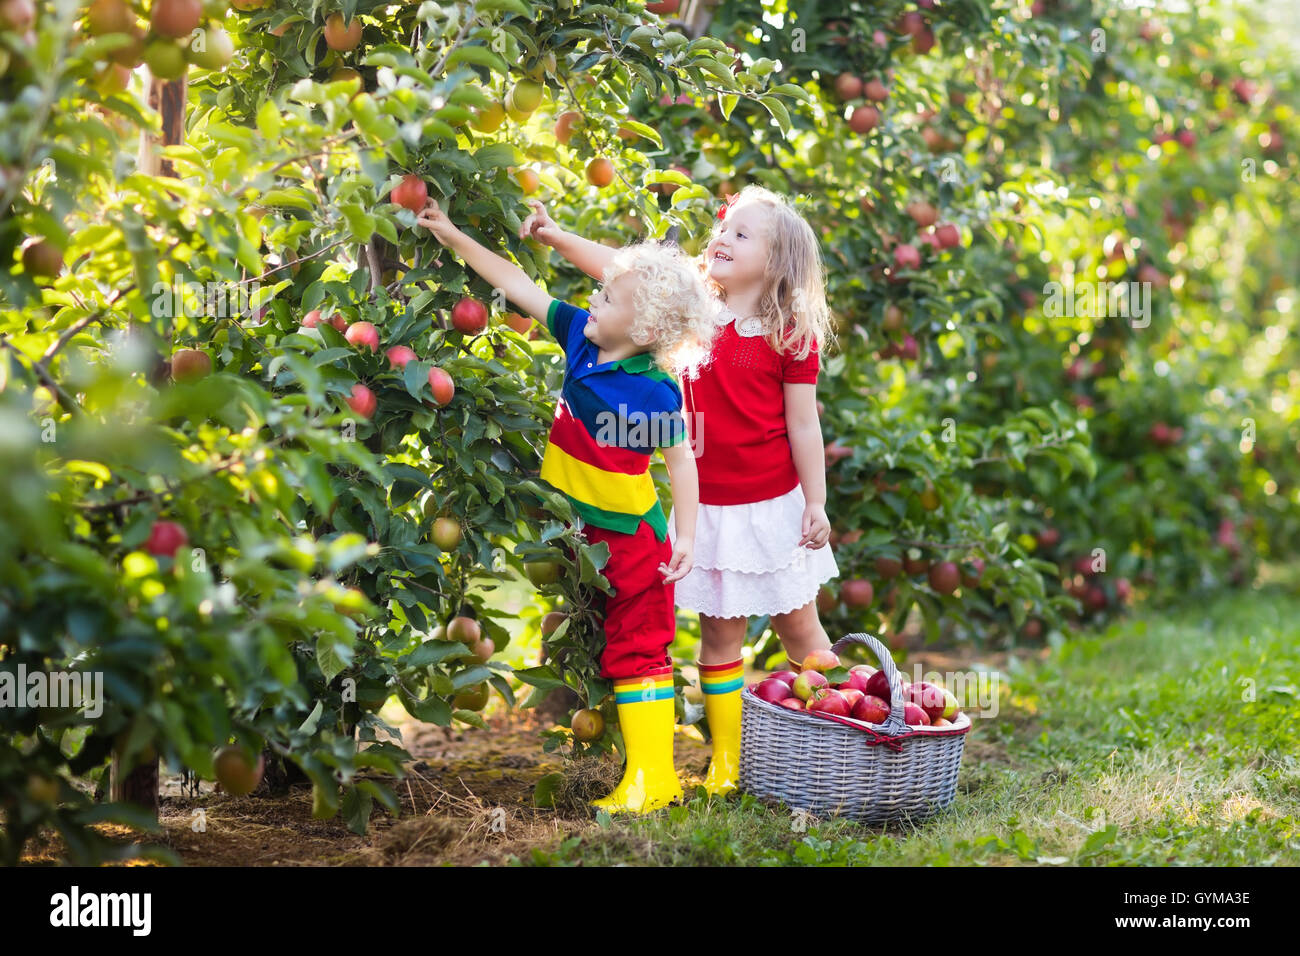 Kinder pflücken Äpfel auf einem Bauernhof im Herbst. Kleine Mädchen, jungen  und Babys spielen im Apfelgarten Baum. Kinder wählen Sie Obst im Korb  Stockfotografie - Alamy